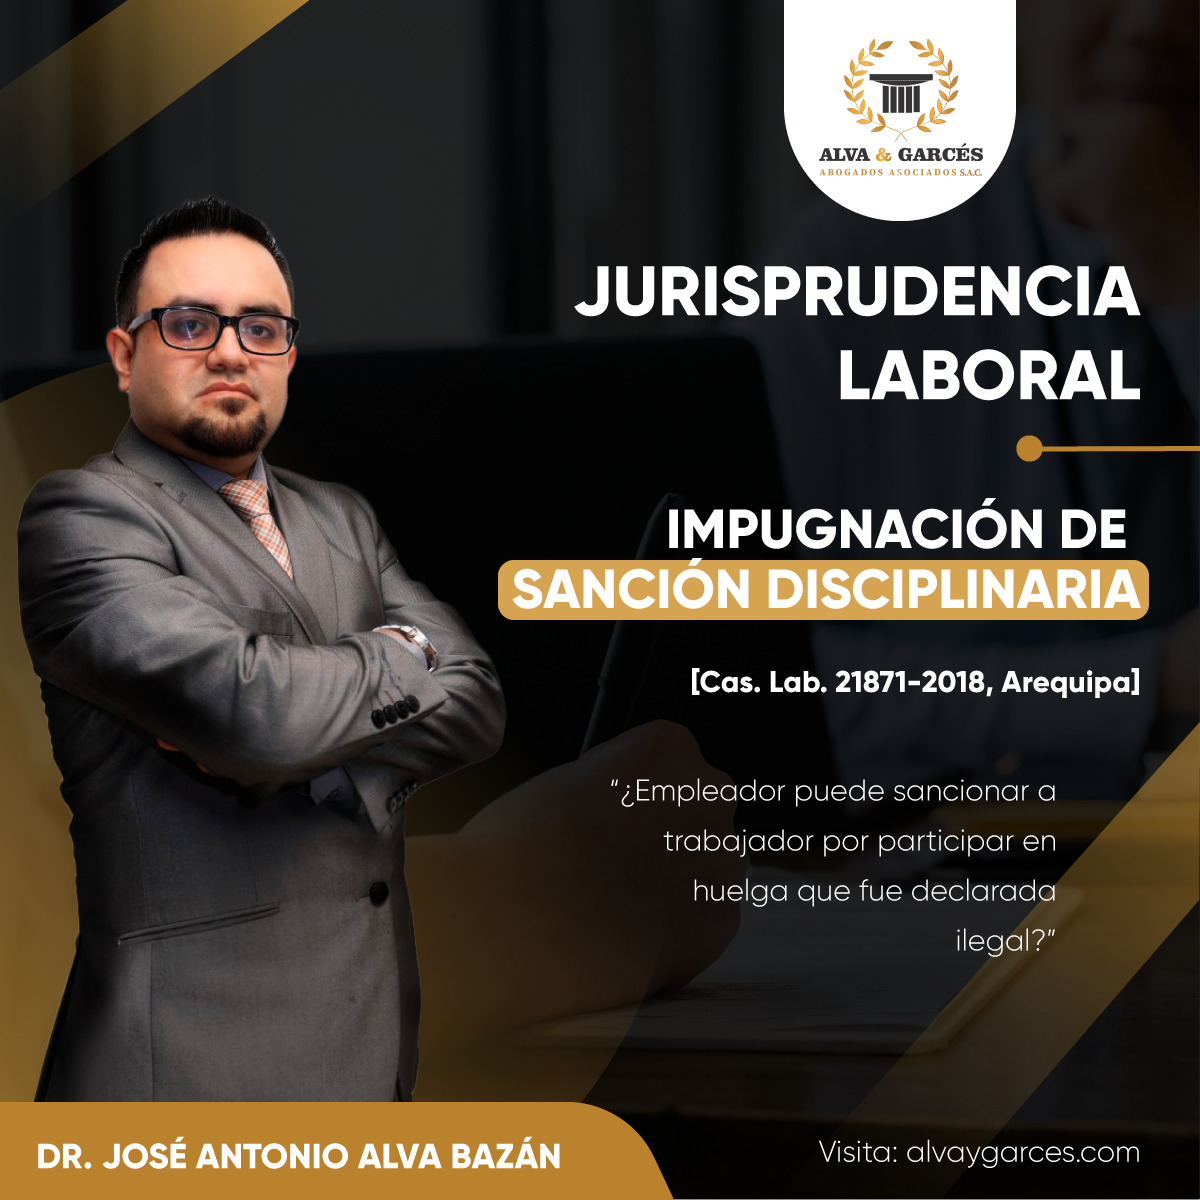 JURISPRUDENCIA LABORAL - IMPUGNACIÓN DE SANCIÓN DISCIPLINARIA